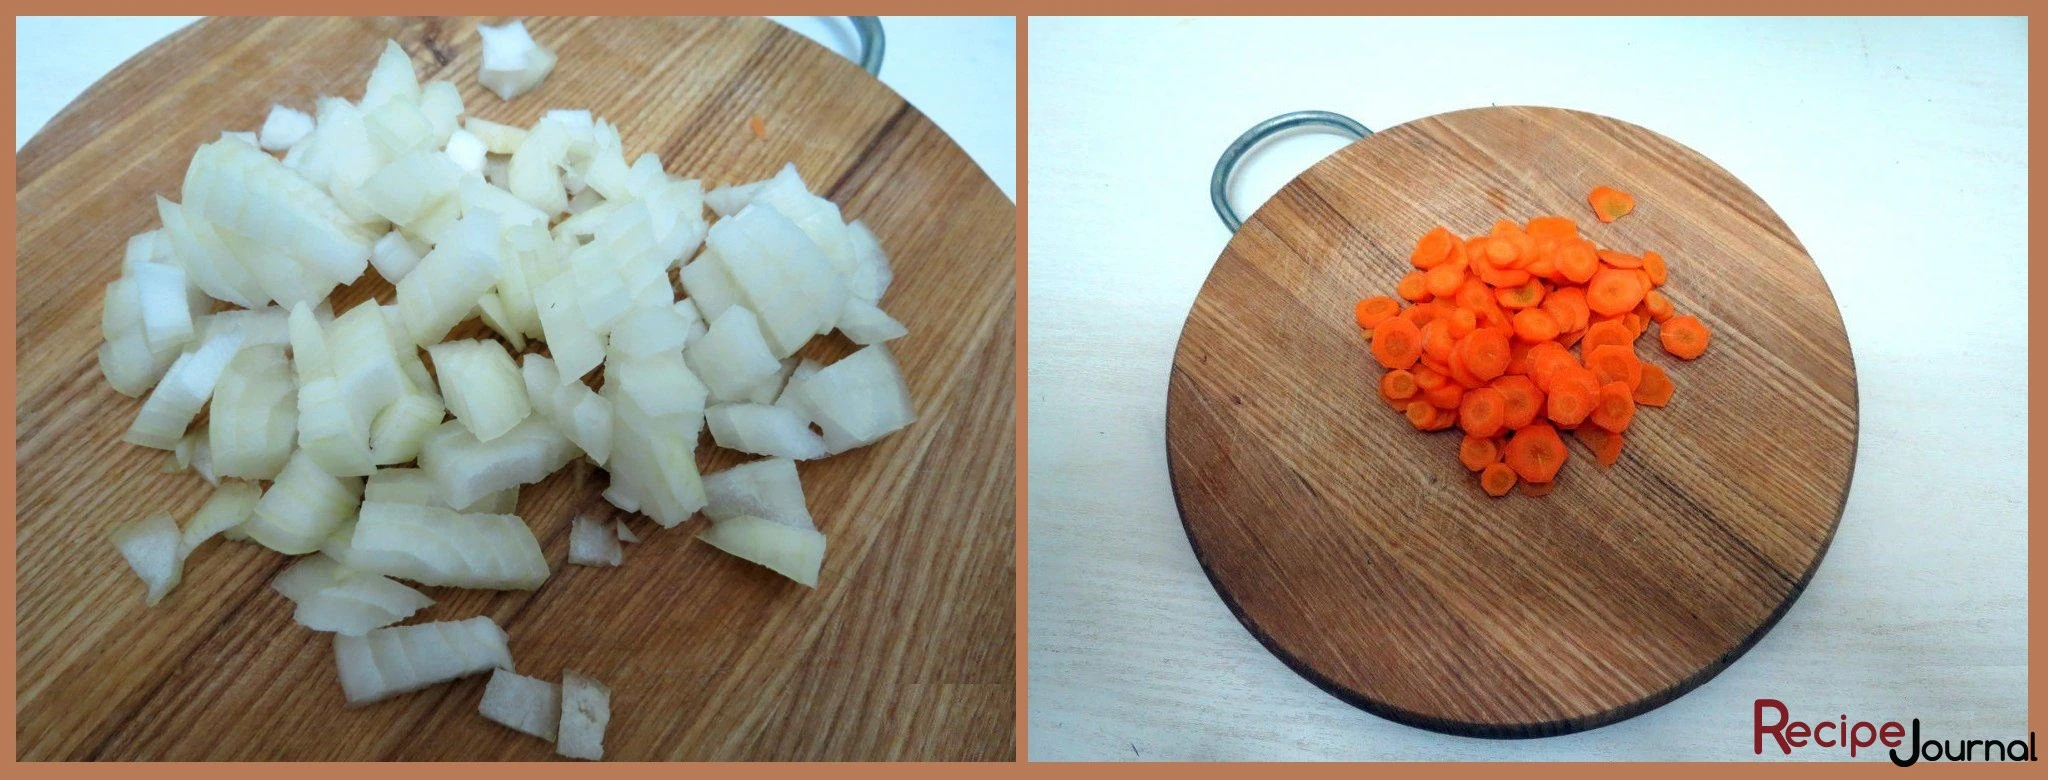 Чистим морковь и лук, все мелко режем.